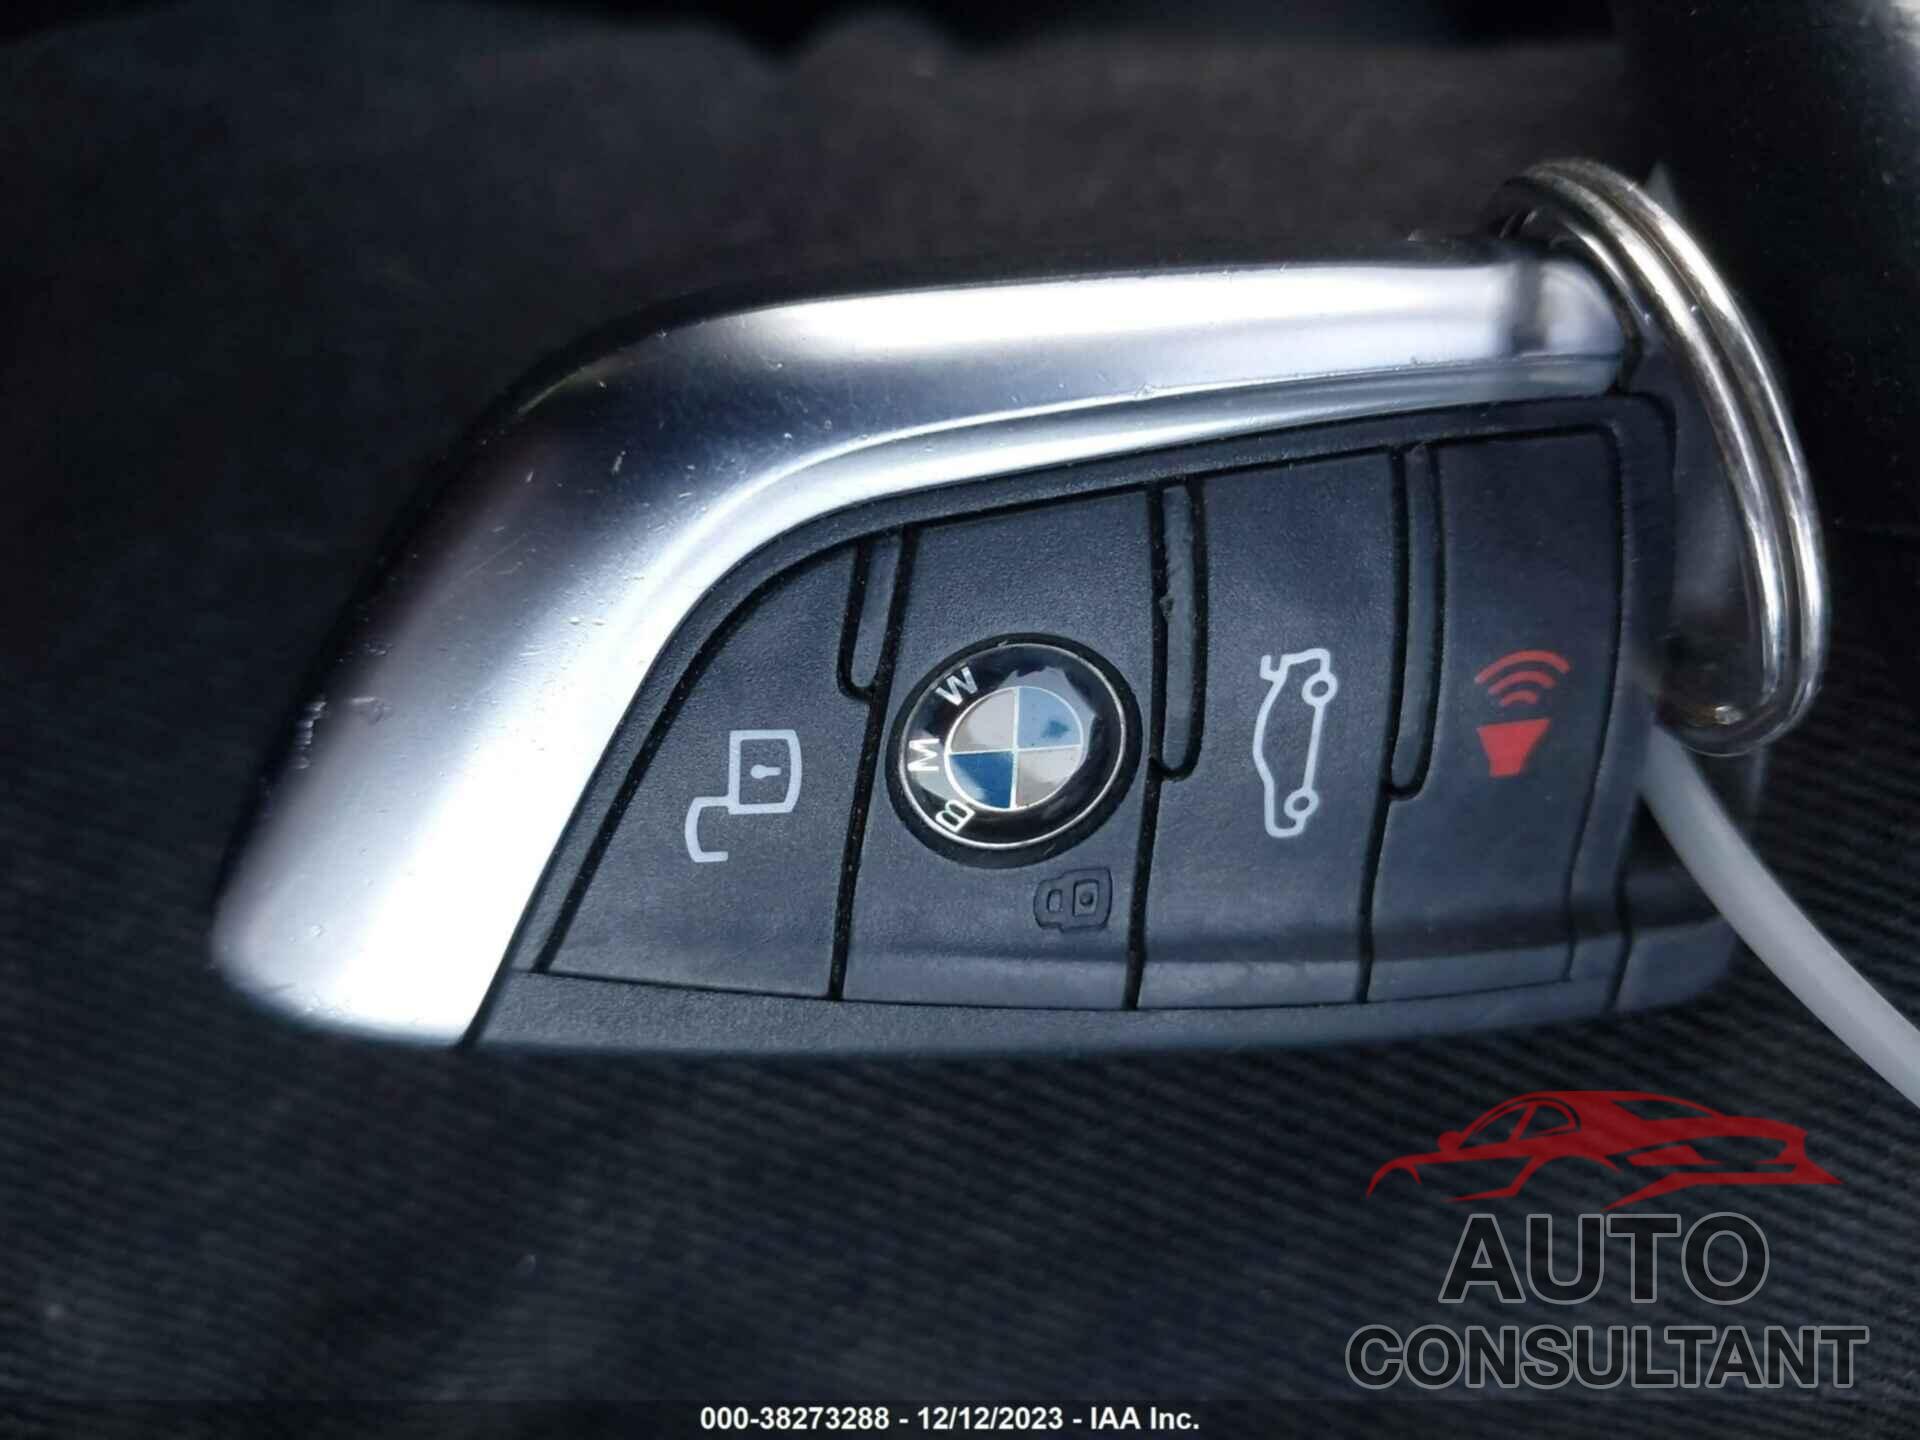 BMW X3 2020 - 5UXTY3C01L9C17111